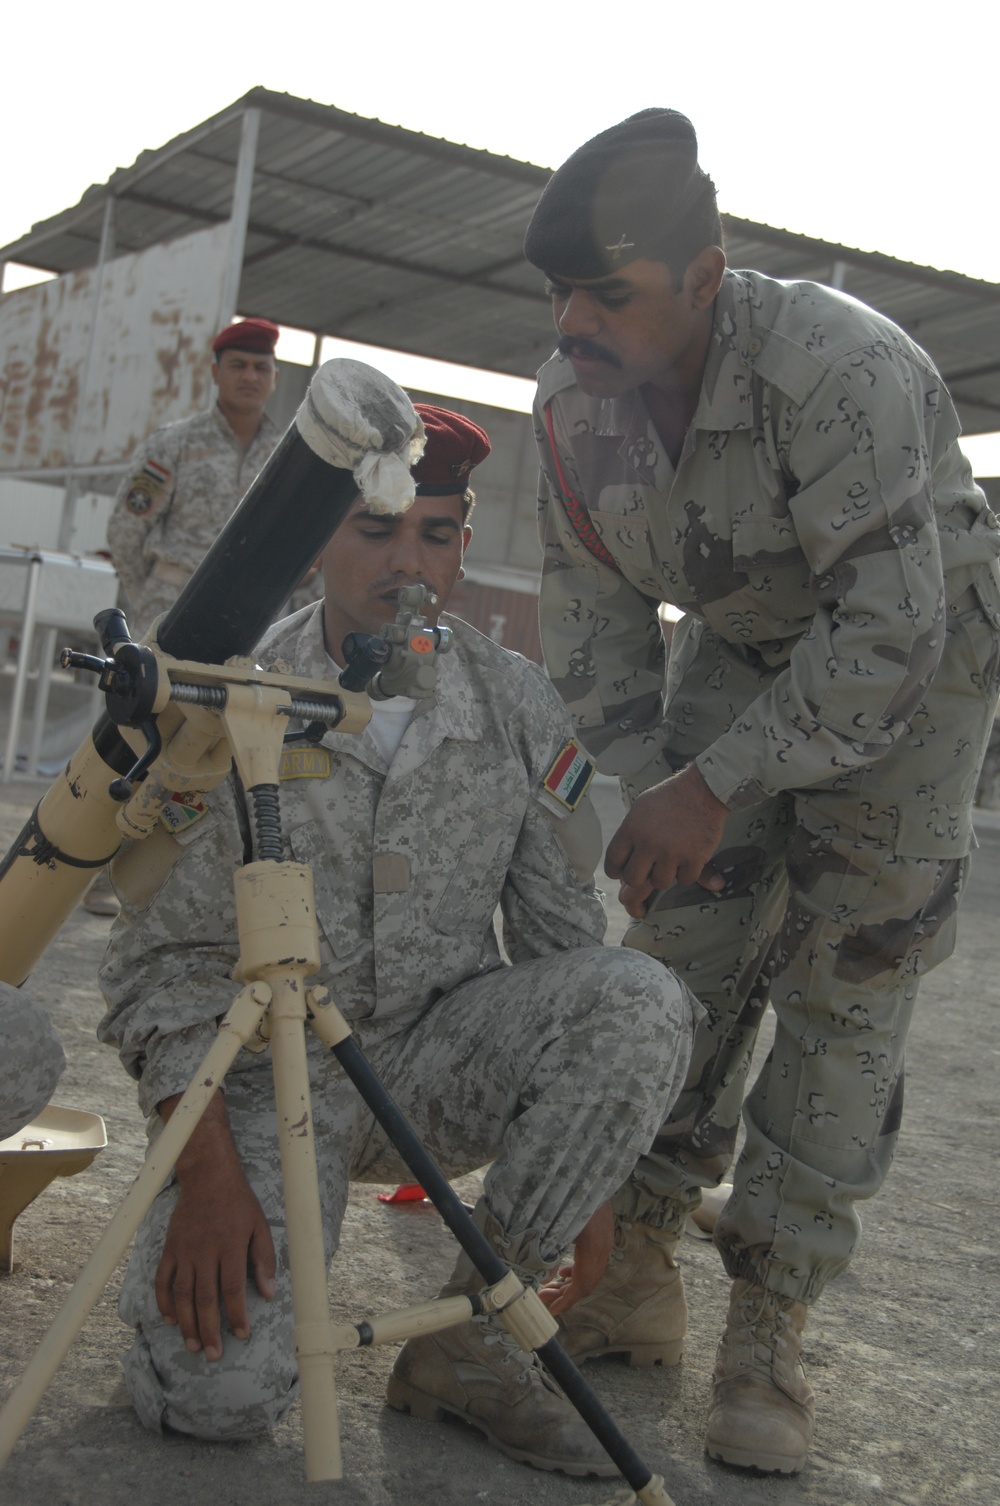 Basic mortar training